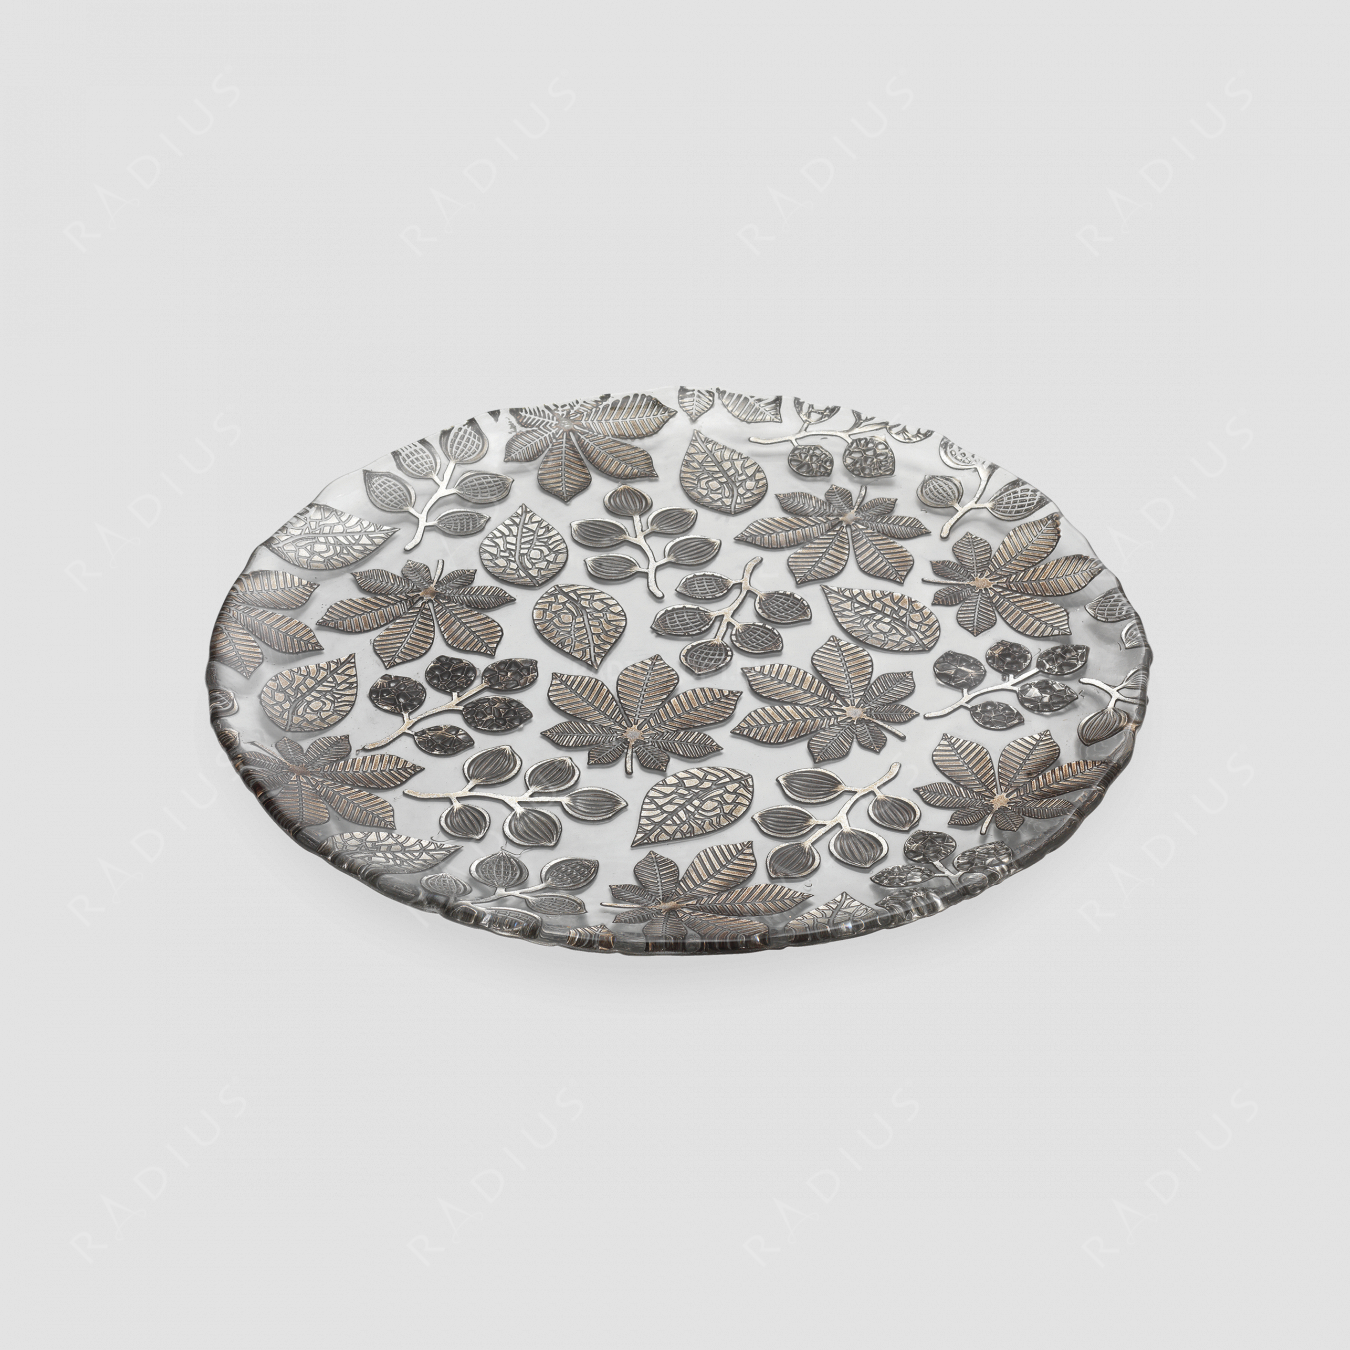 Блюдо круглое плоское, диаметр: 37 см, высота: 2 см, материал: стекло, цвет: кварцевый серый, серия Naturalia, IVV (Italy), Италия